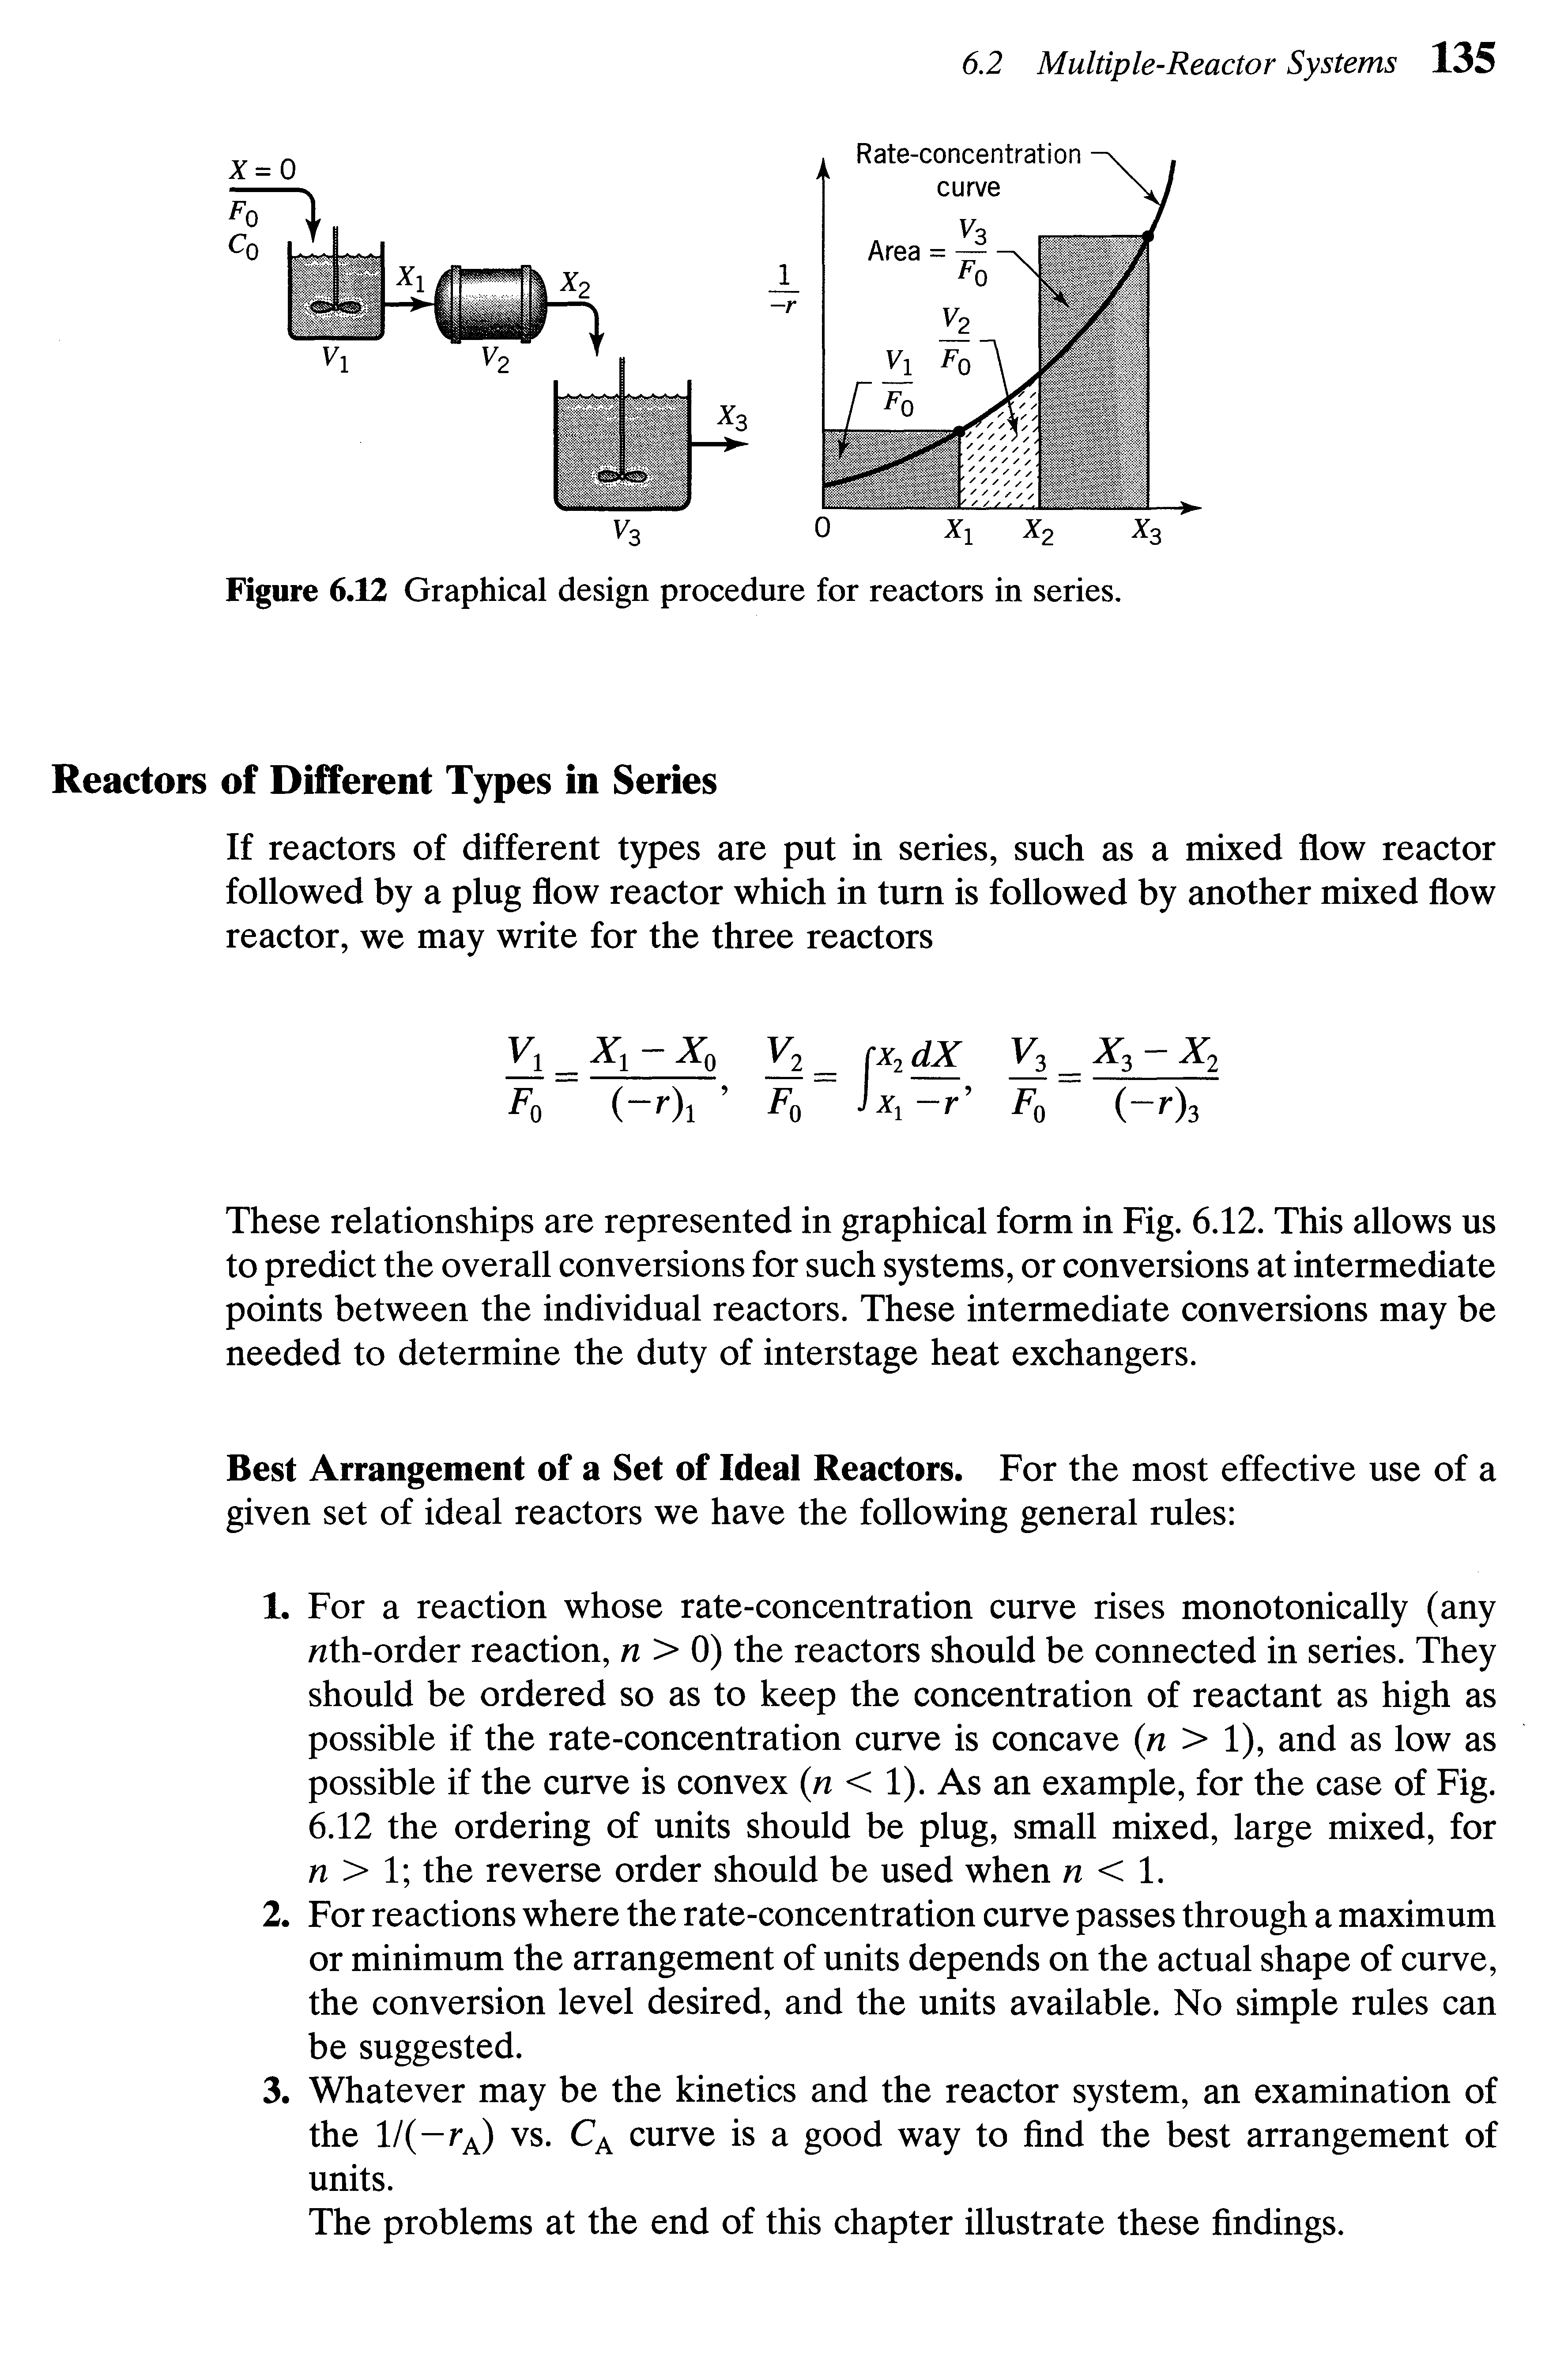 Figure 6.12 Graphical design procedure for reactors in series.